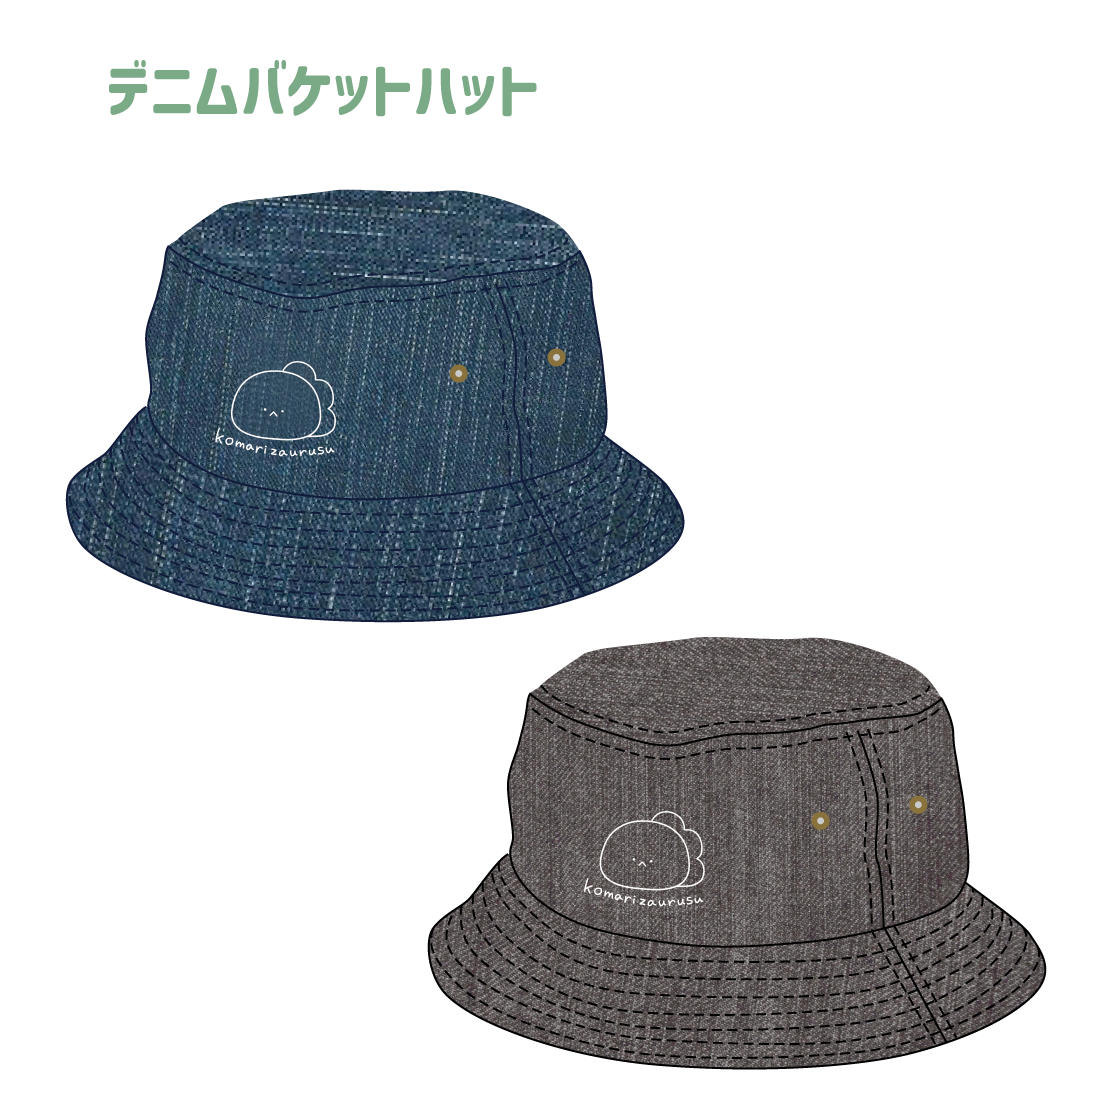 [Troublesome Zaurus] Denim bucket hat (Troubled Zaurus) [Shipped in mid-August]